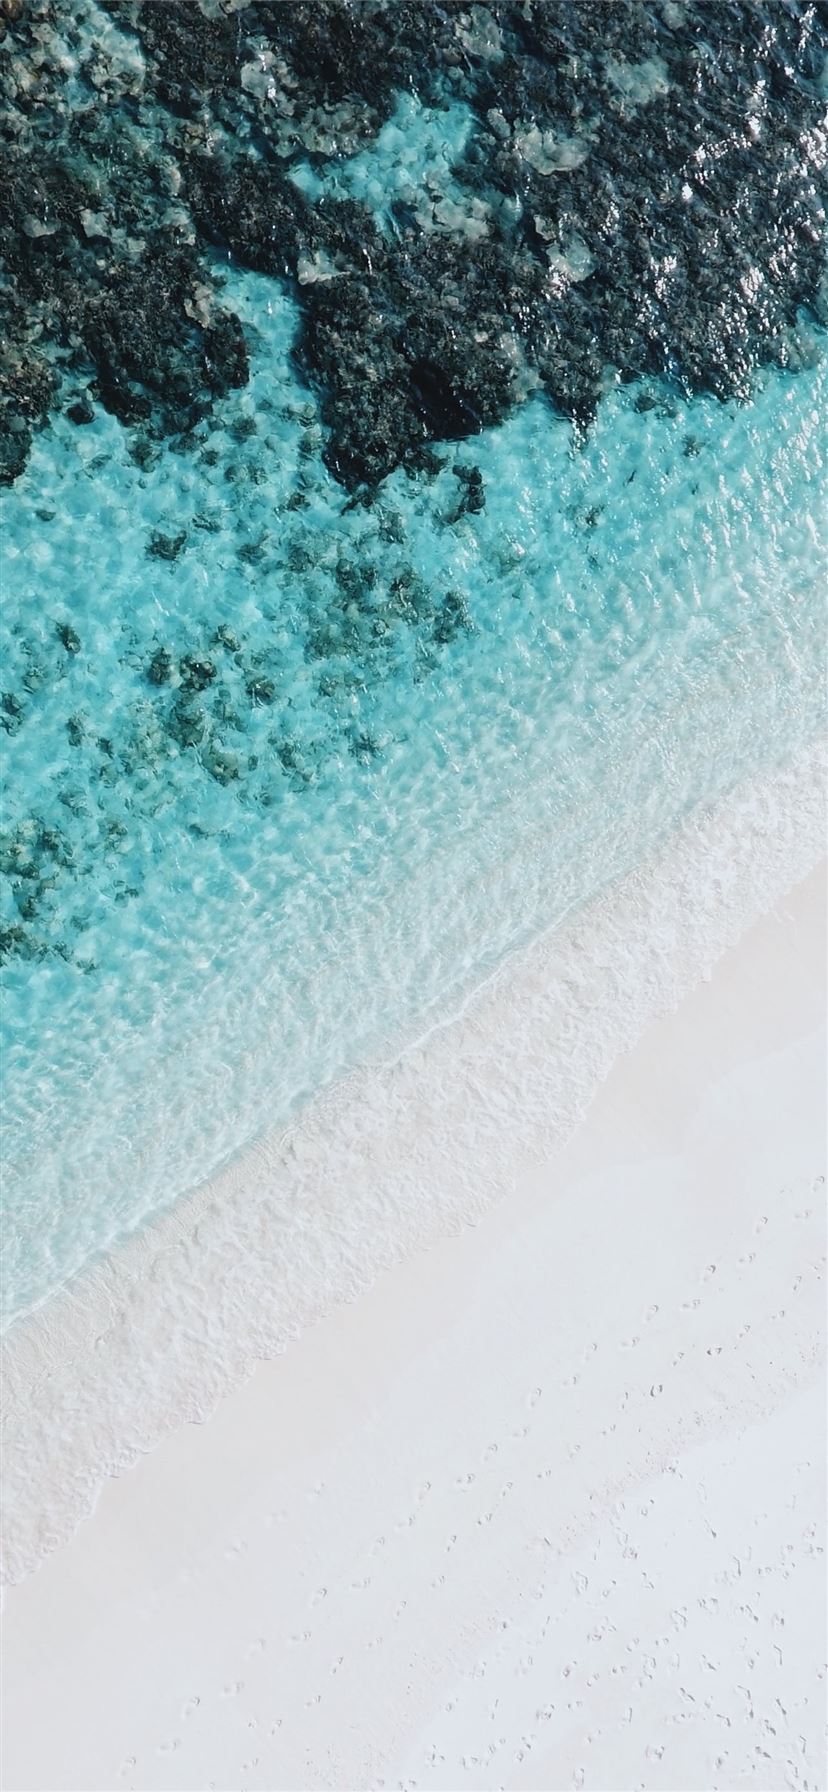 Bạn là một người yêu thích bãi biển và ảnh chụp góc cao? Thì không thể bỏ qua những bức ảnh high angle chụp với iPhone X. Hình nền với bãi biển đẹp và tinh tế, cùng với sự hoàn hảo của chiếc điện thoại sẽ tạo ra một hình ảnh tuyệt đẹp, đầy sống động cho máy của bạn.